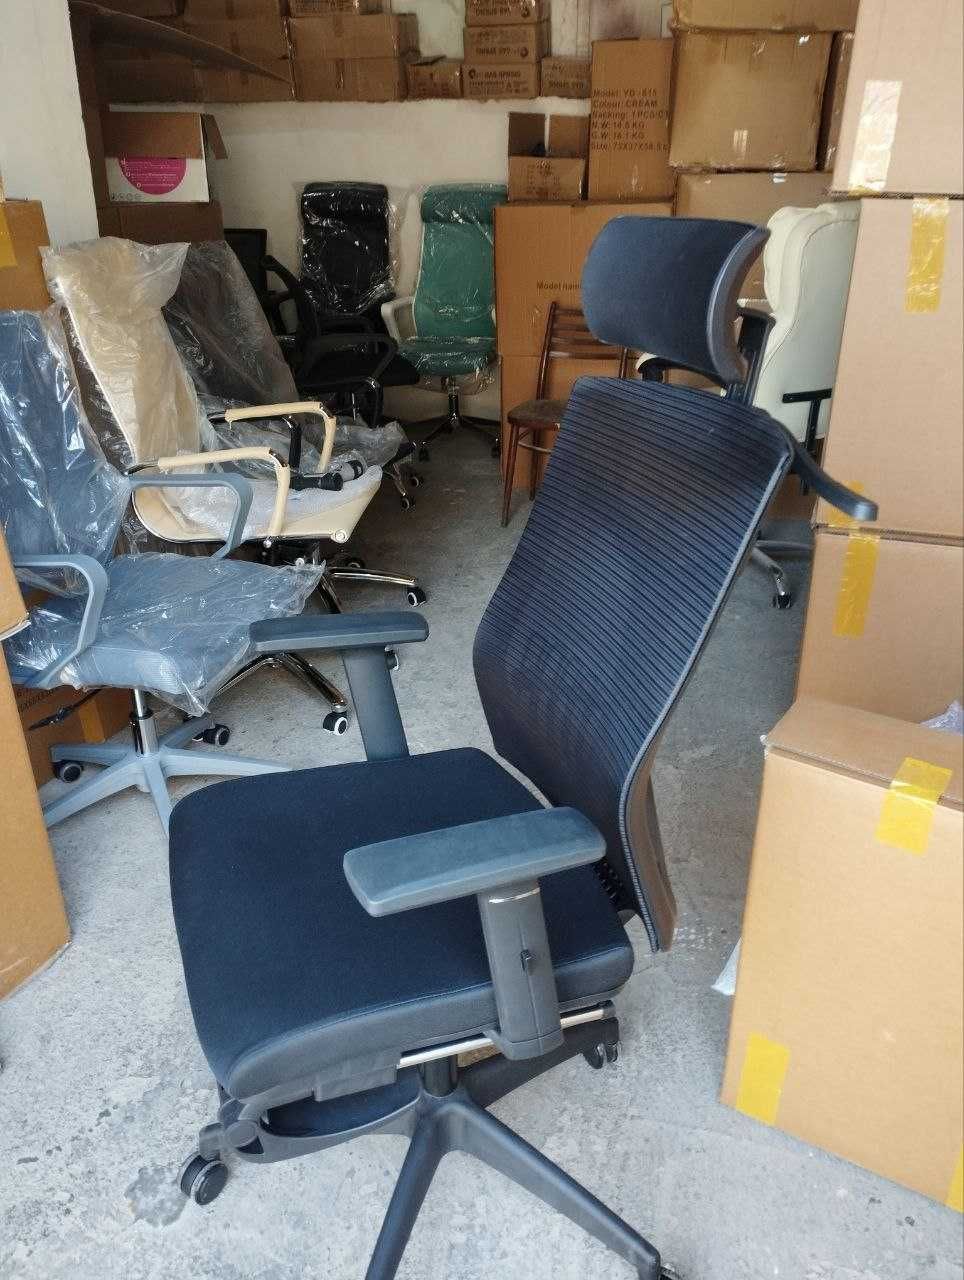 Продается офисное кресло COMFORT для офиса и для дома от первых рук.